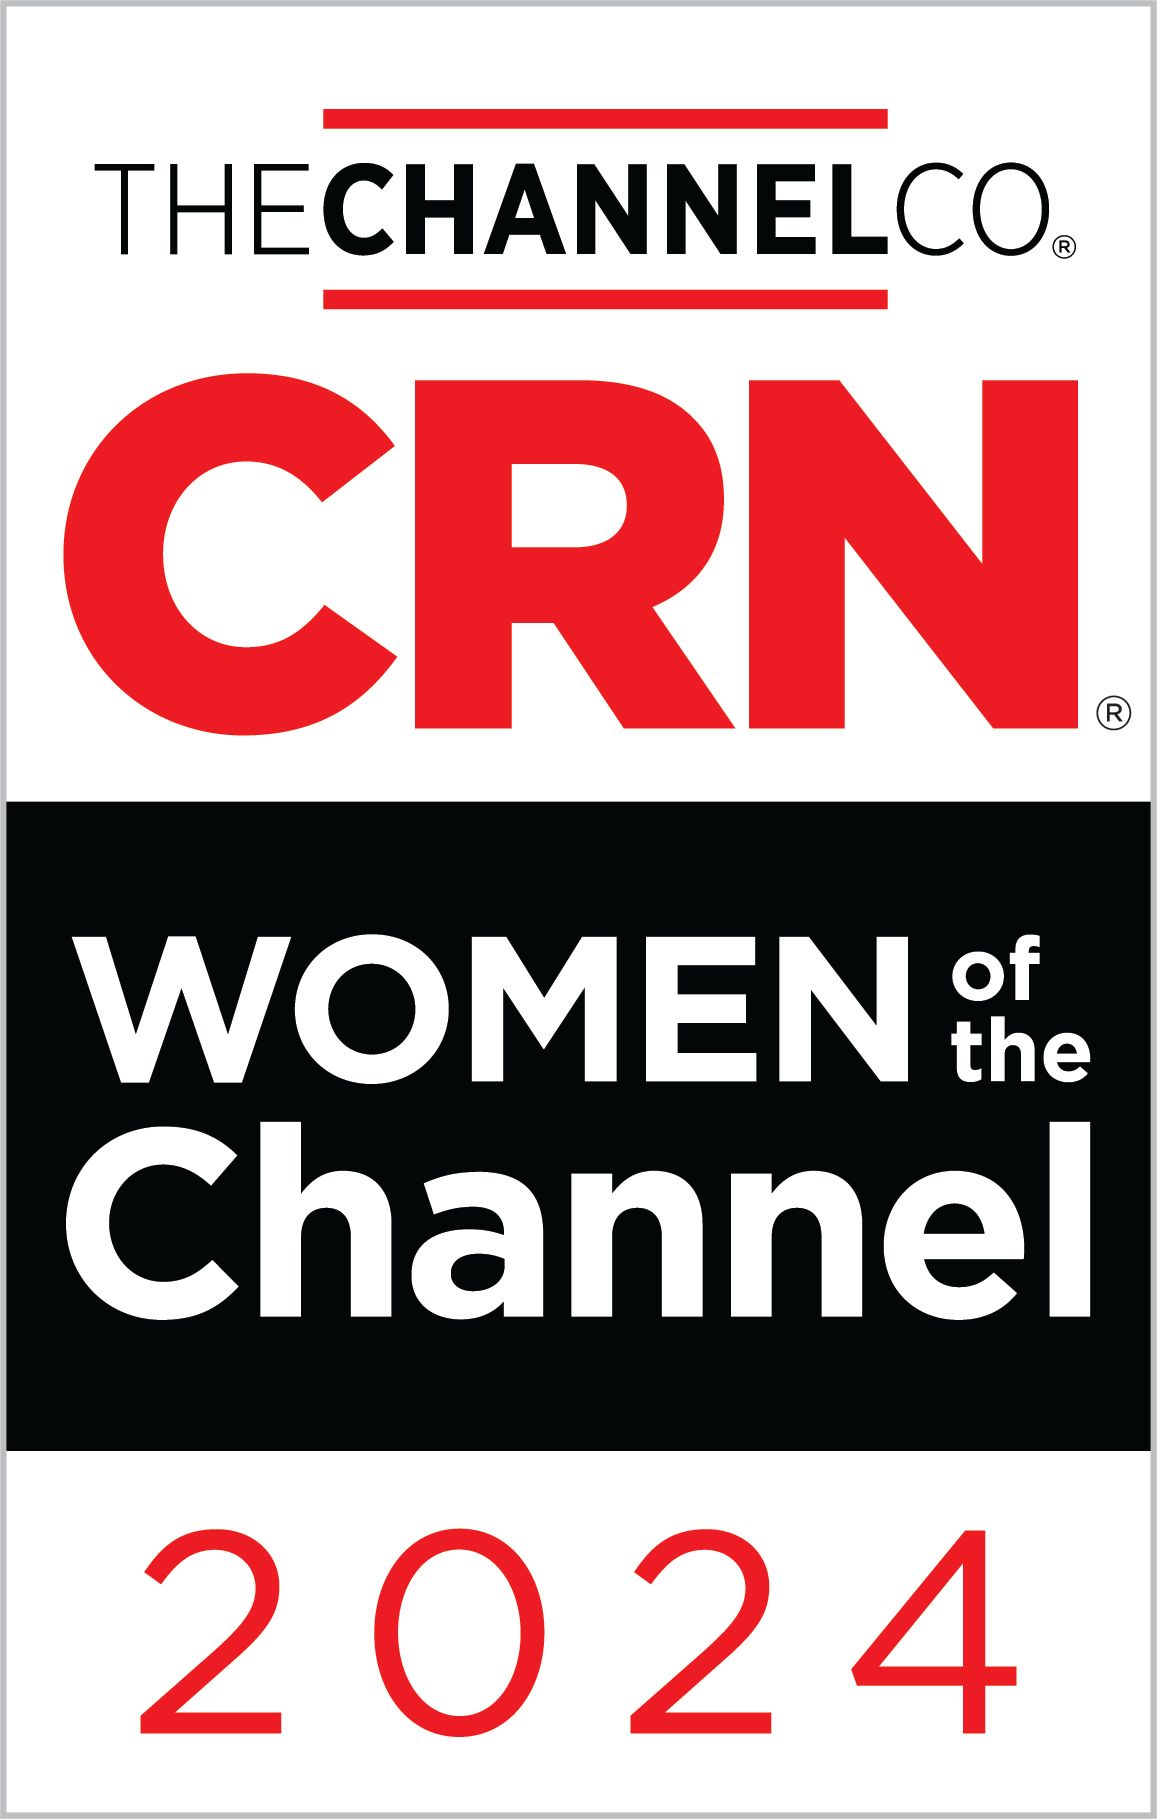 Daniella LundsbergSteele CRN's 2019 Women of the Channel